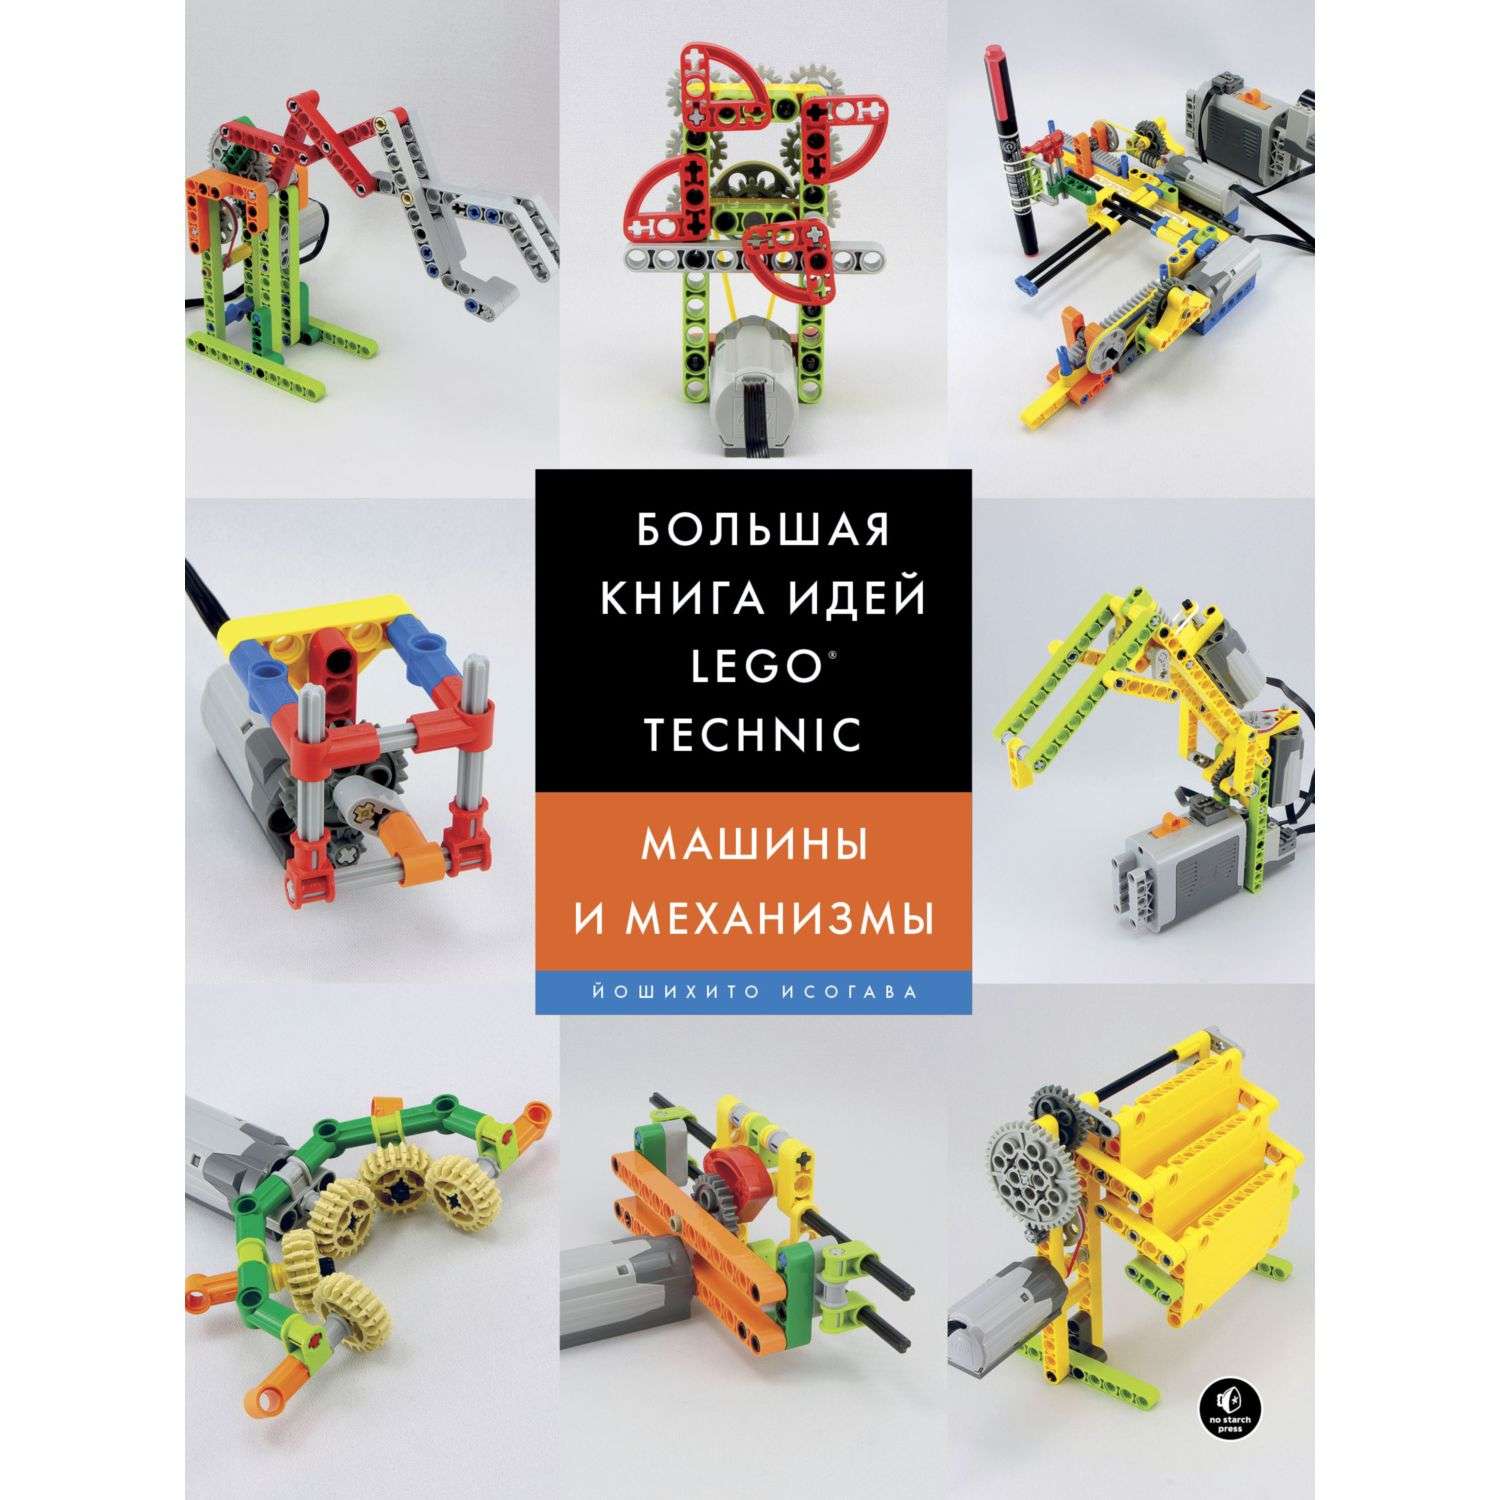 Книга Эксмо Большая книга идей LEGO Technic Машины и механизмы - фото 2